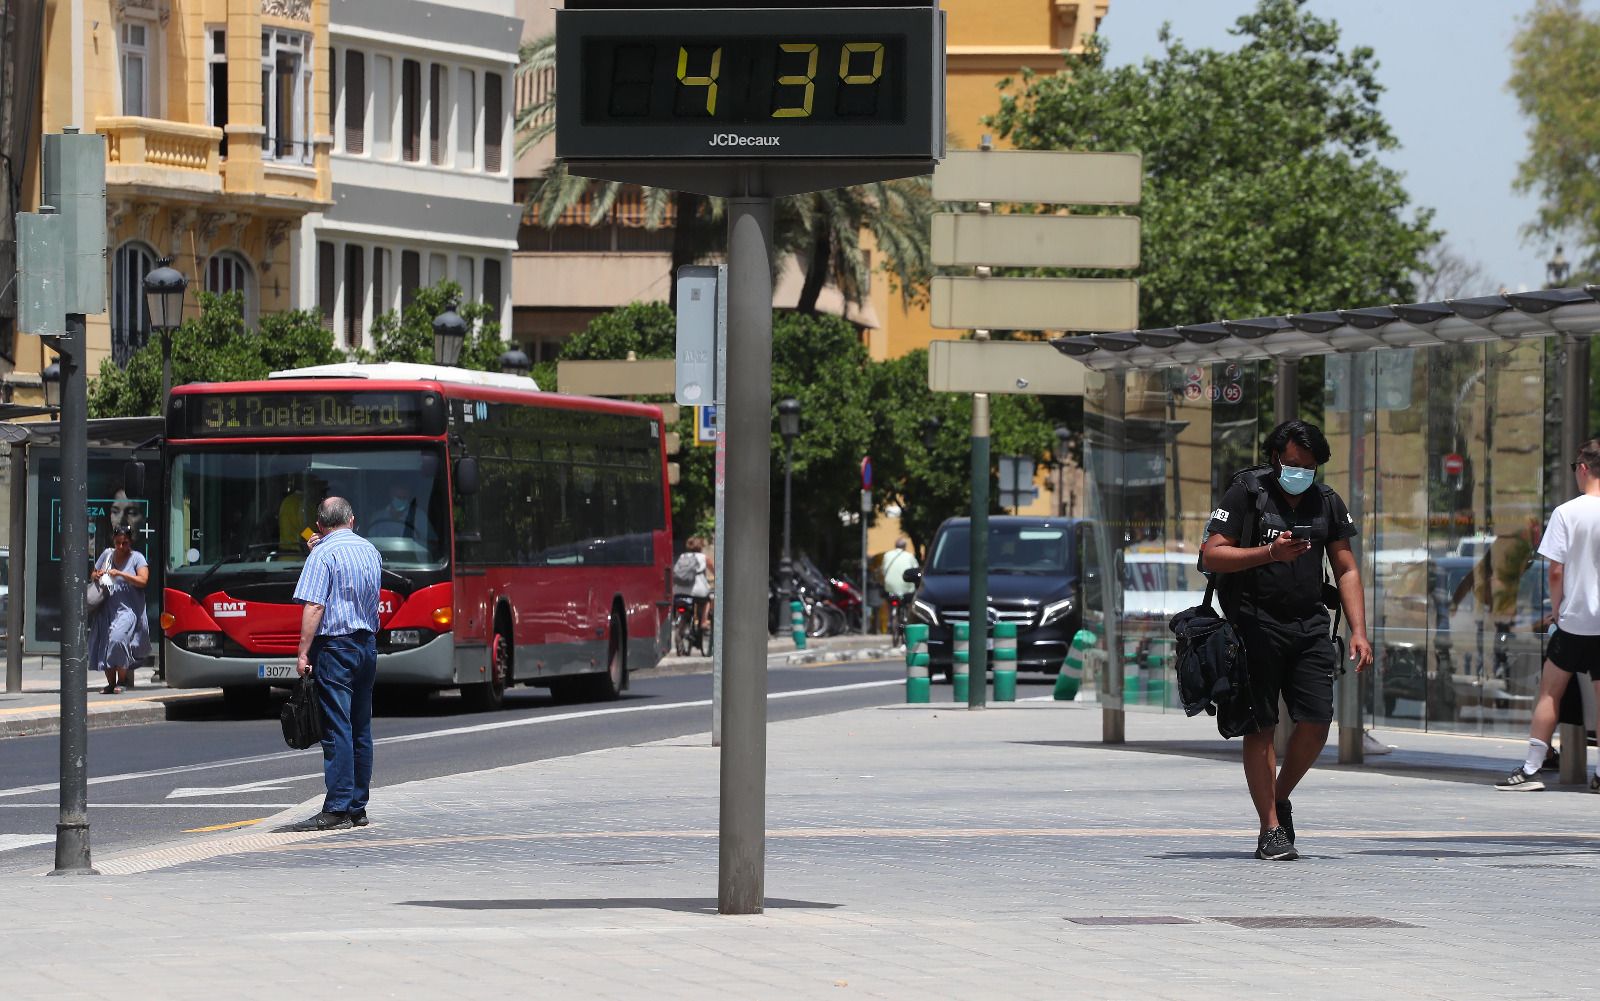 València se achicharra a 43 grados en el día más tórrido de la ola de calor